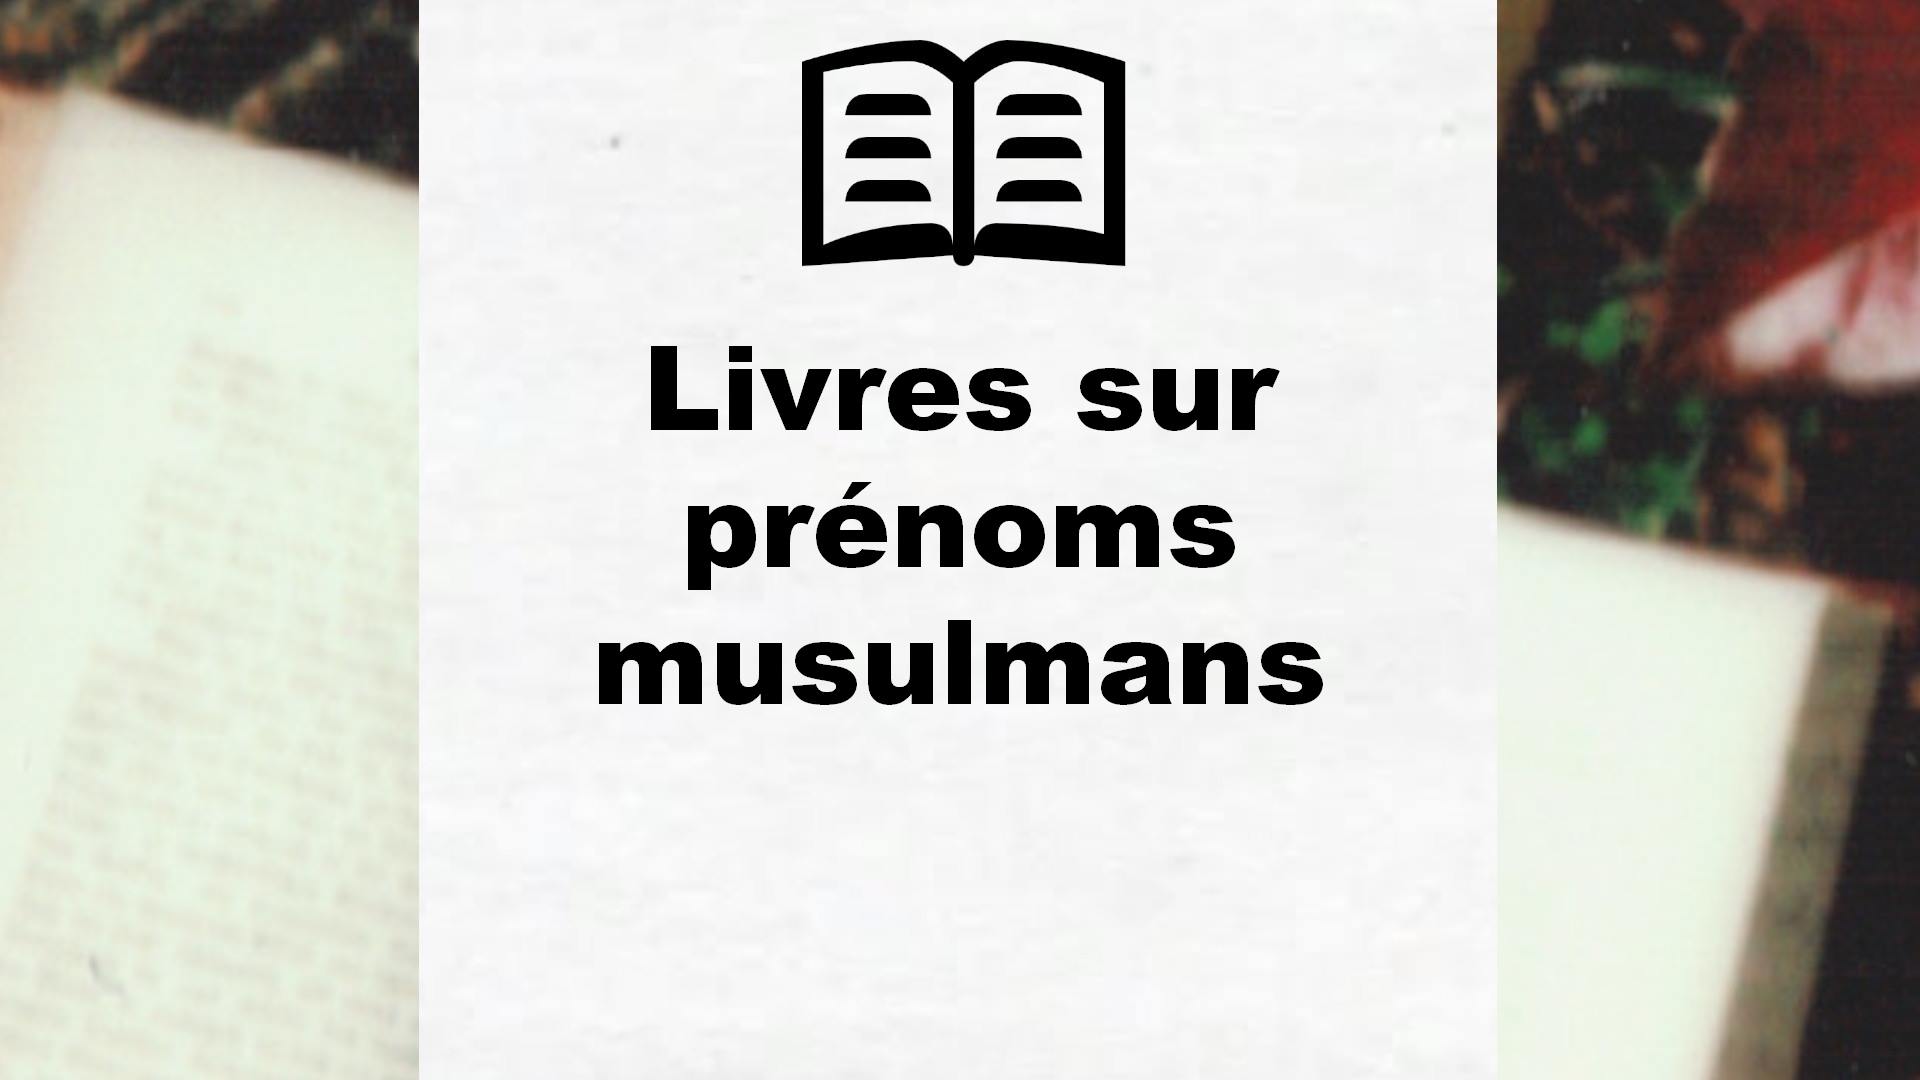 Livres sur prénoms musulmans